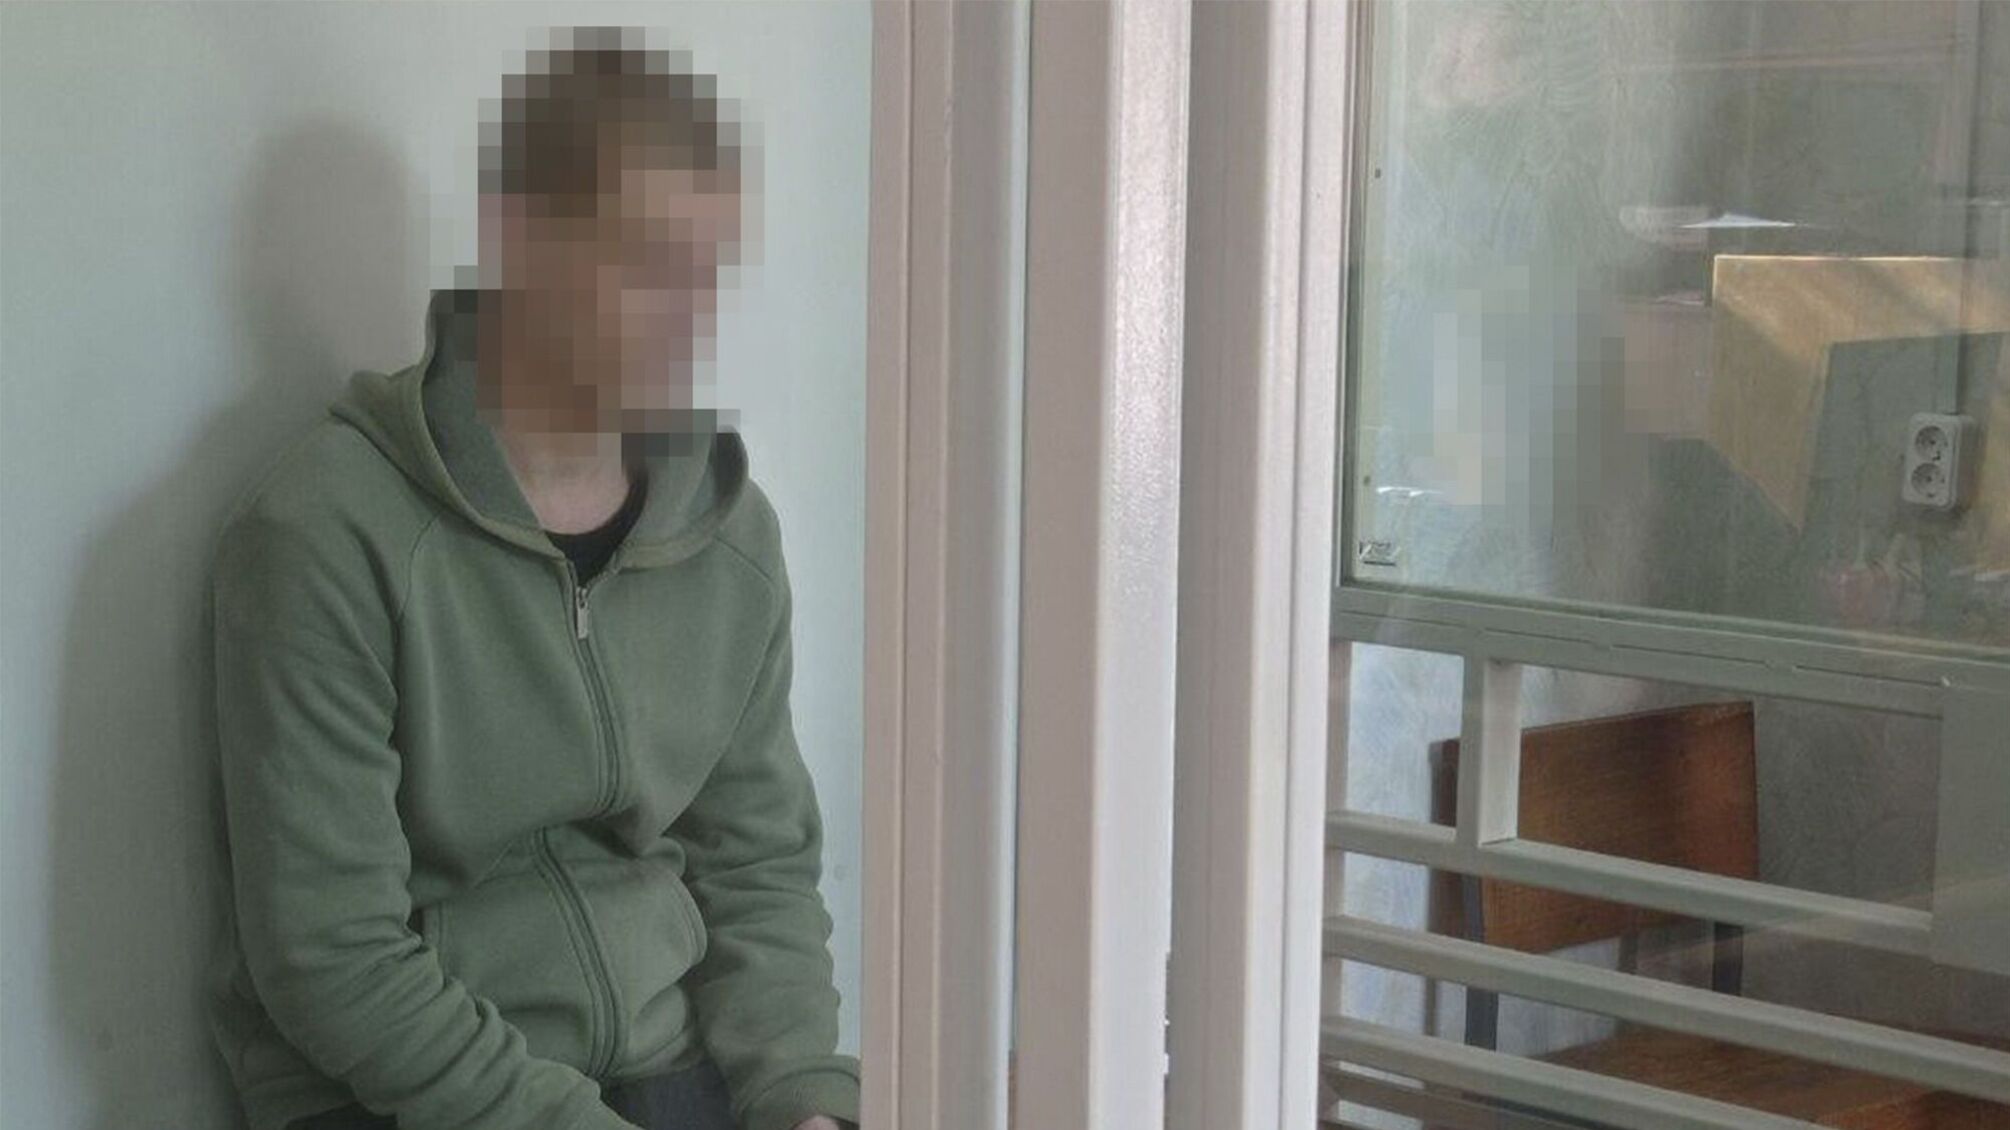 Выводил на 'расстрел' гражданских: 15 лет тюрьмы получил уроженец Донбасса за издевательство над мирными жителями